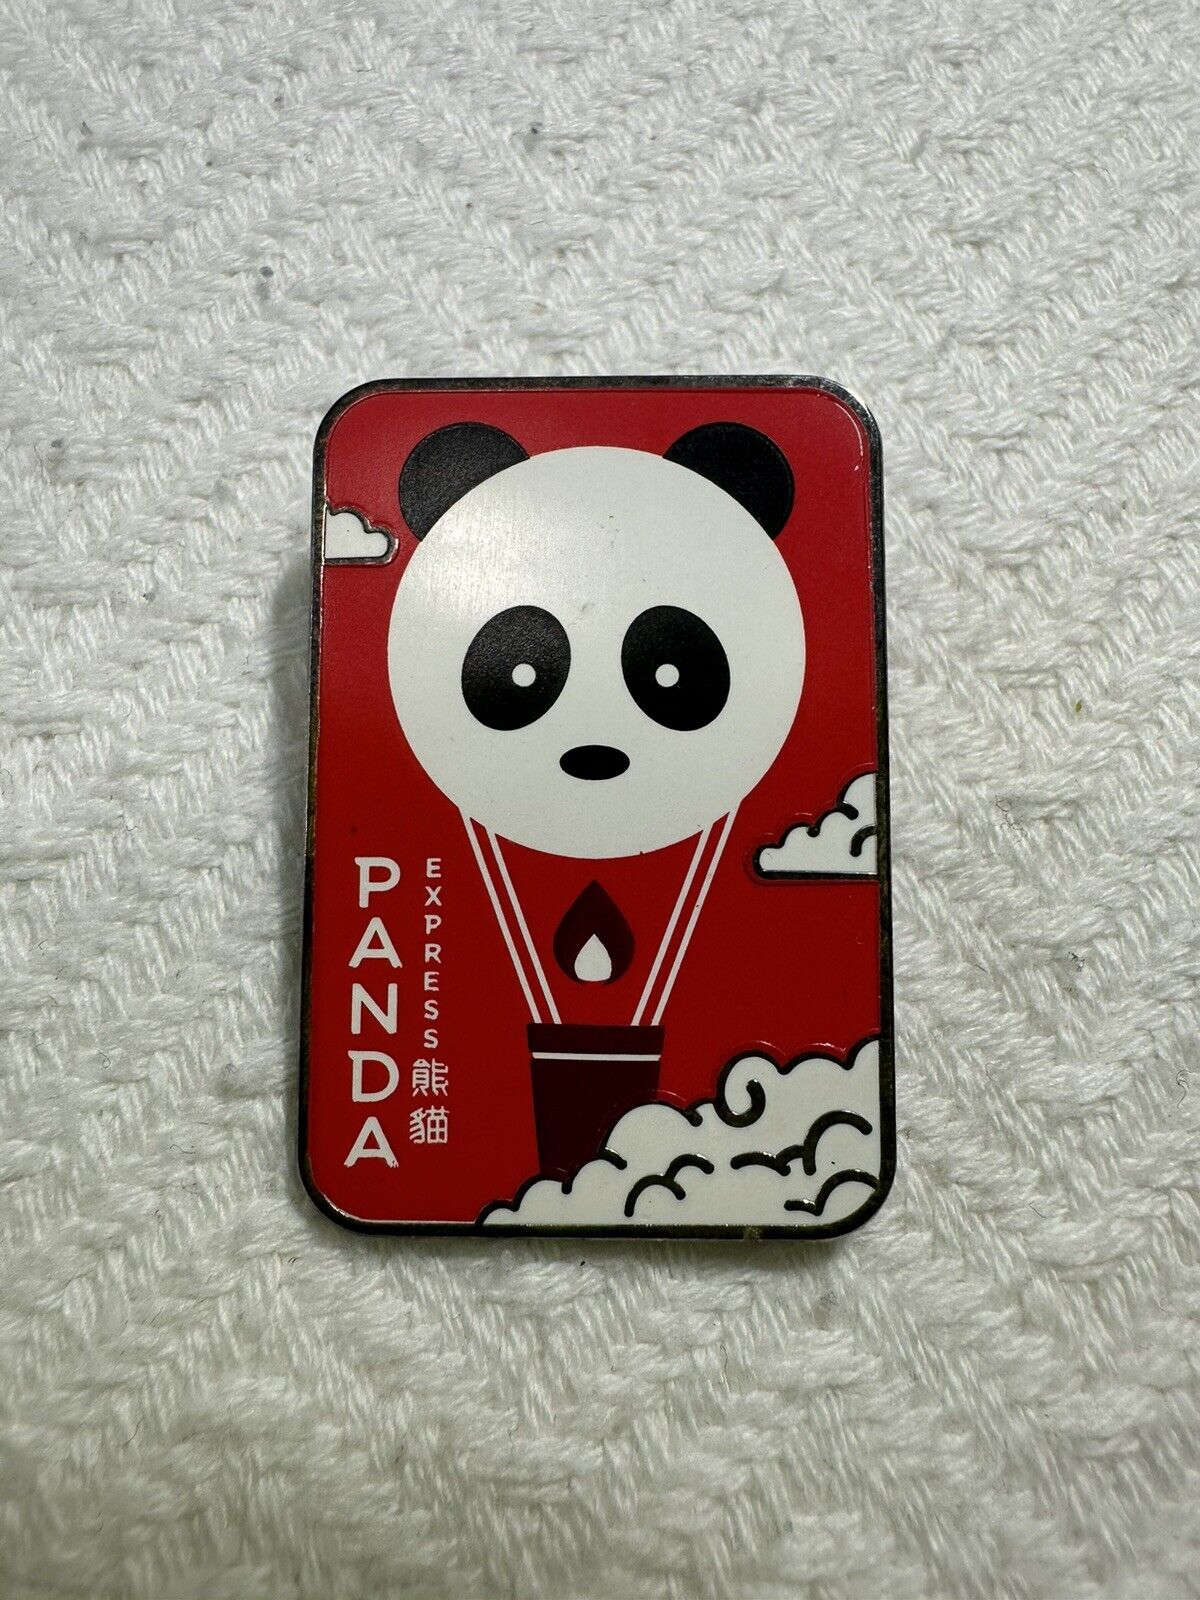 Panda Express Hot Air Balloon Pin Rare Limited Edition